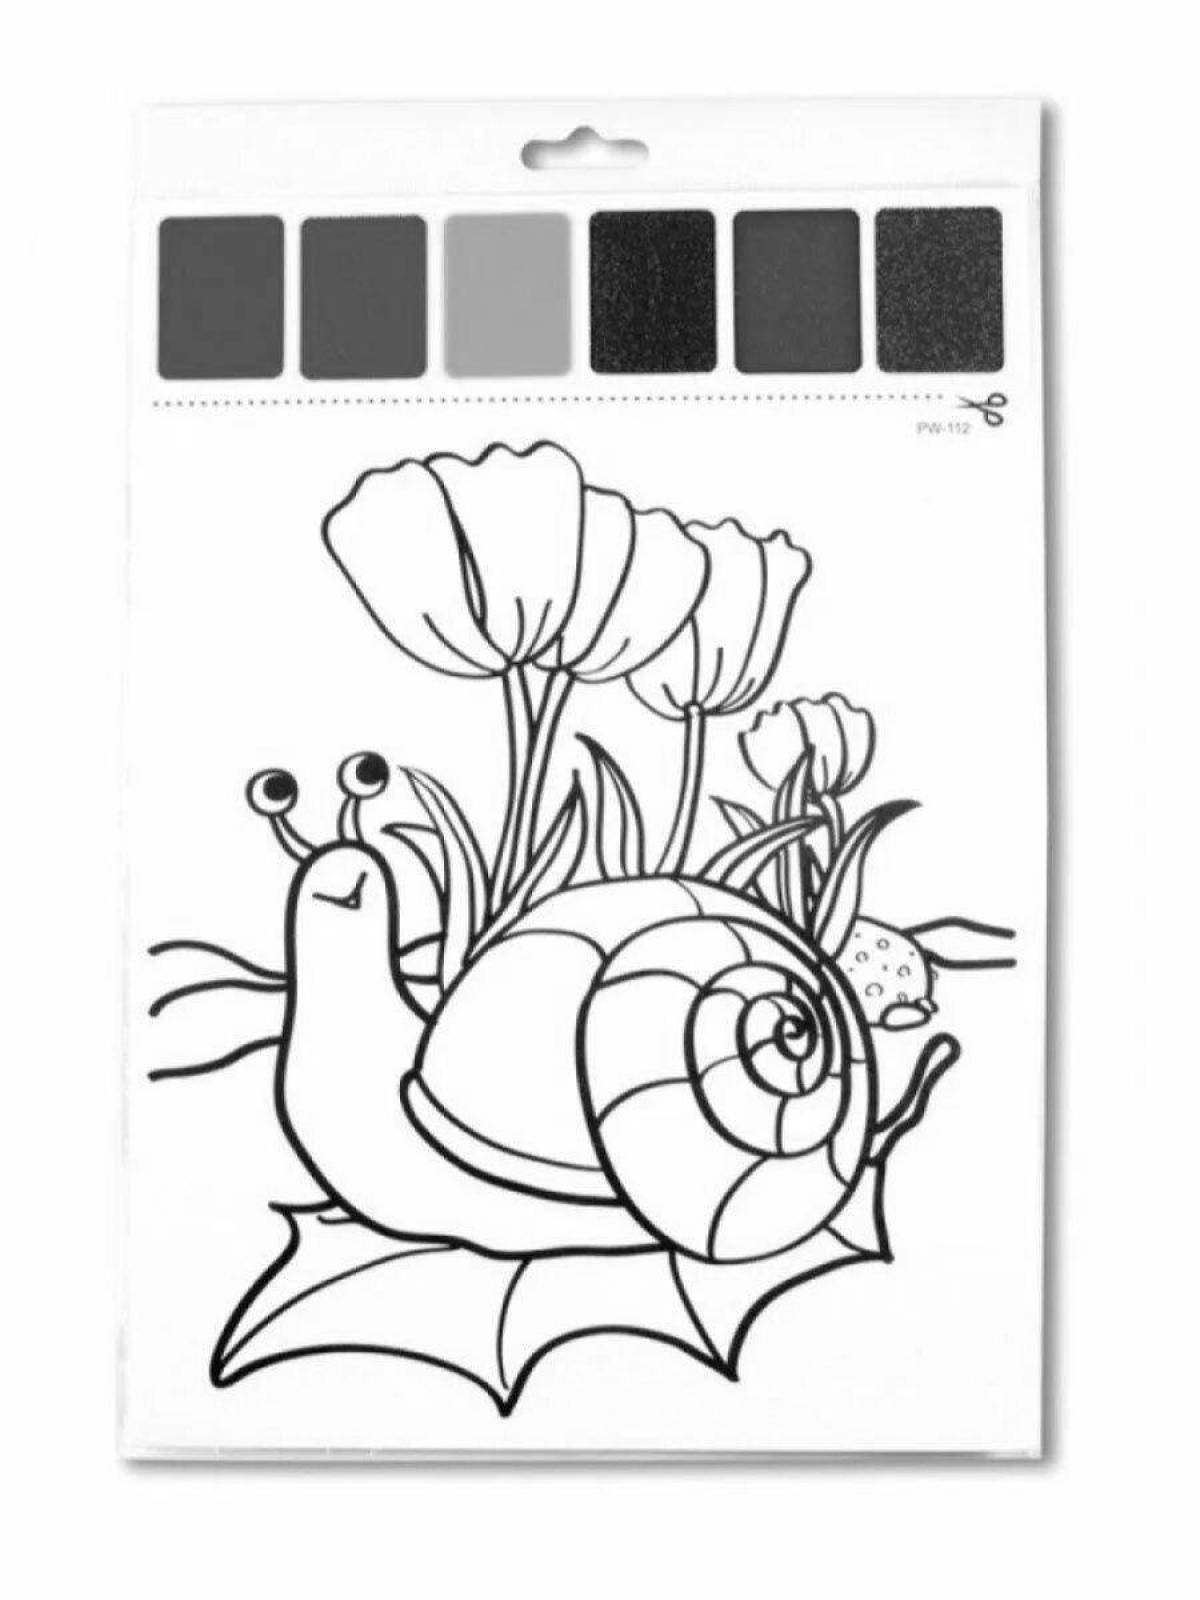 Страница раскраски акварельного маркера с цветной заливкой